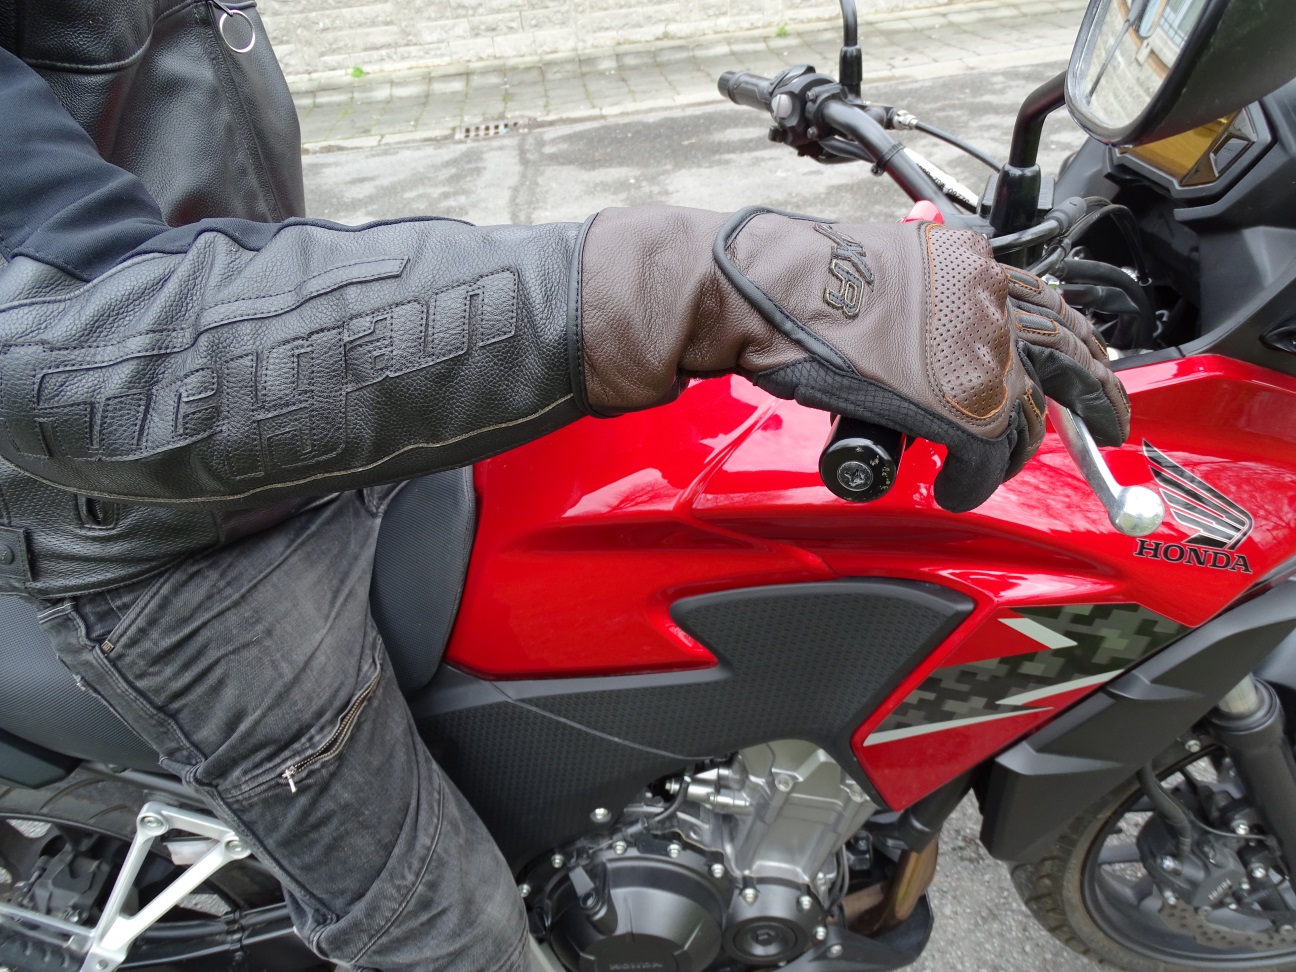 Sur une moto avec un guidon de hauteur standard, les poignets sont bien recouverts